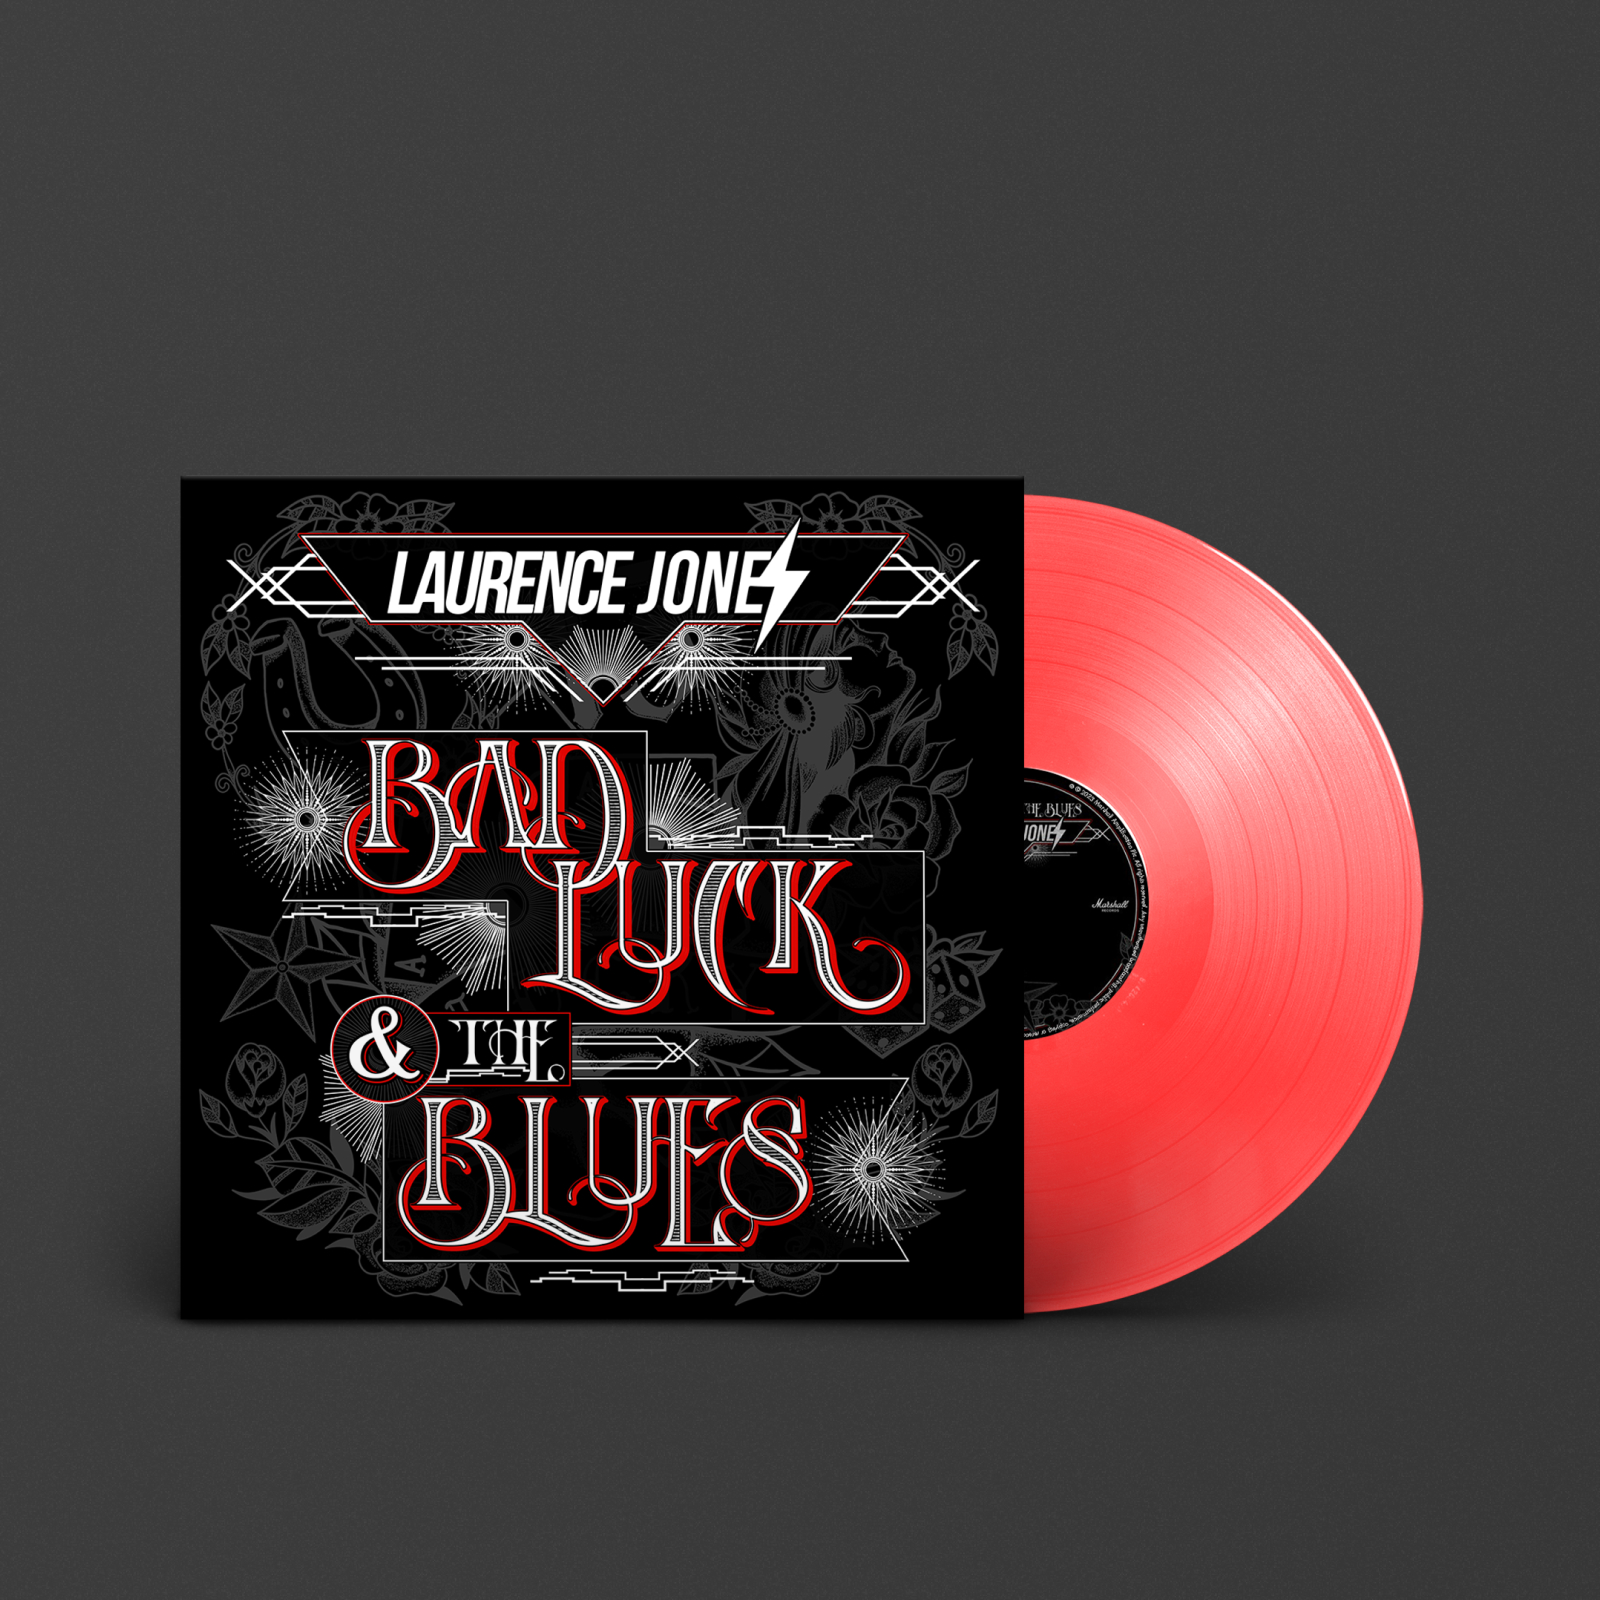 Image d'un vinyle rouge intitulé "Bad luck & the Blues" de Laurence Jones.